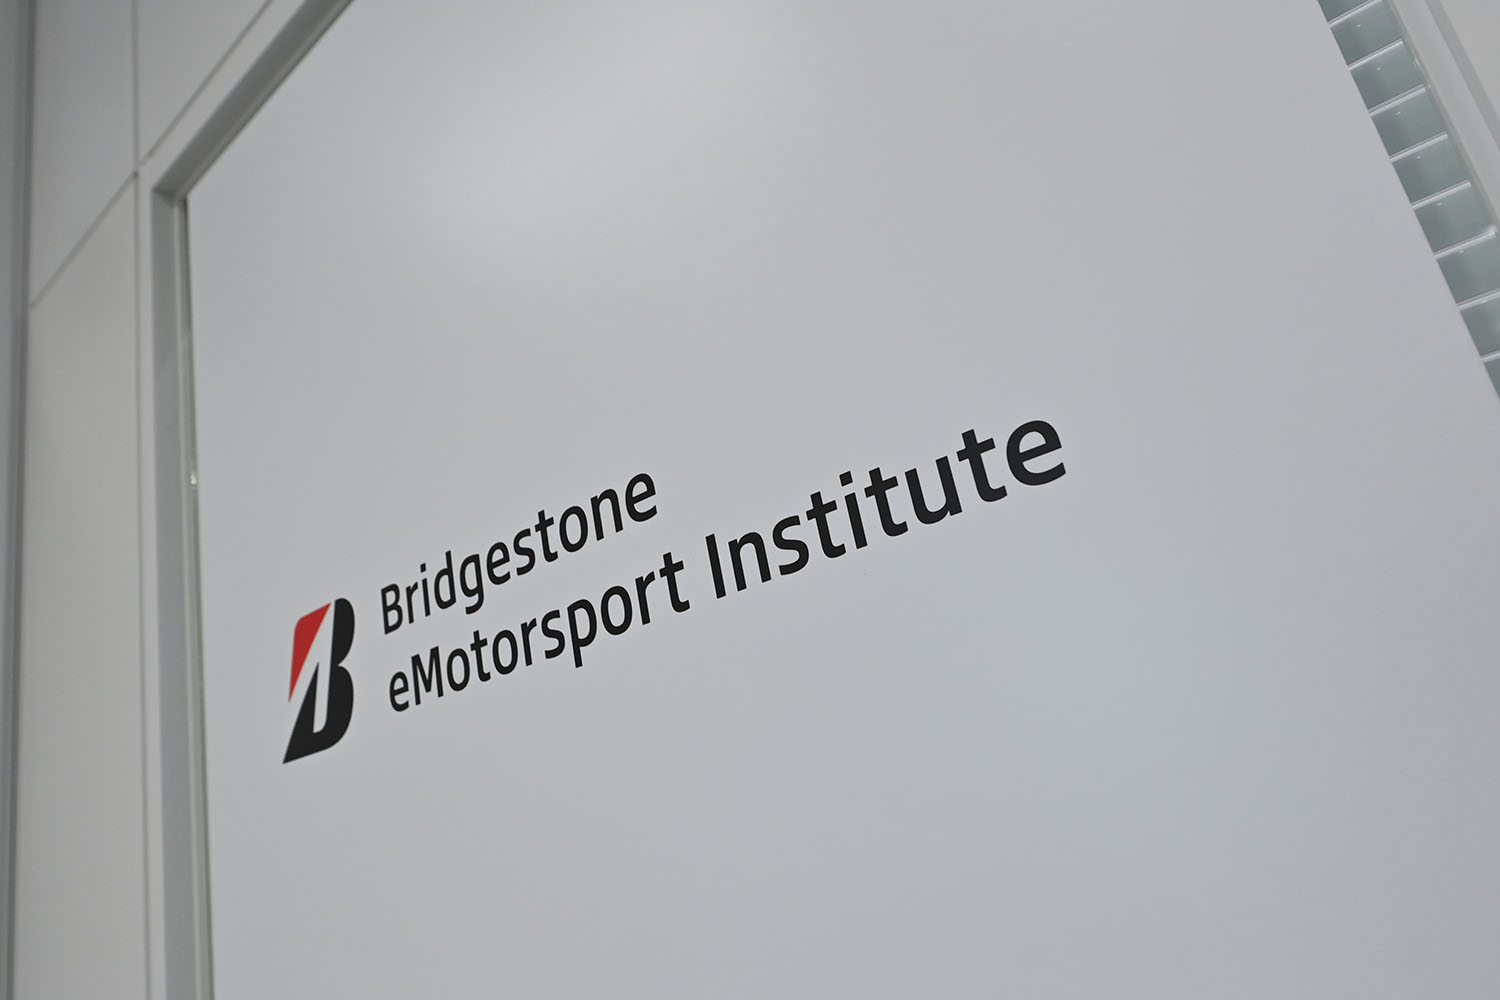 Bridgestone eMotorsport Instituteの看板